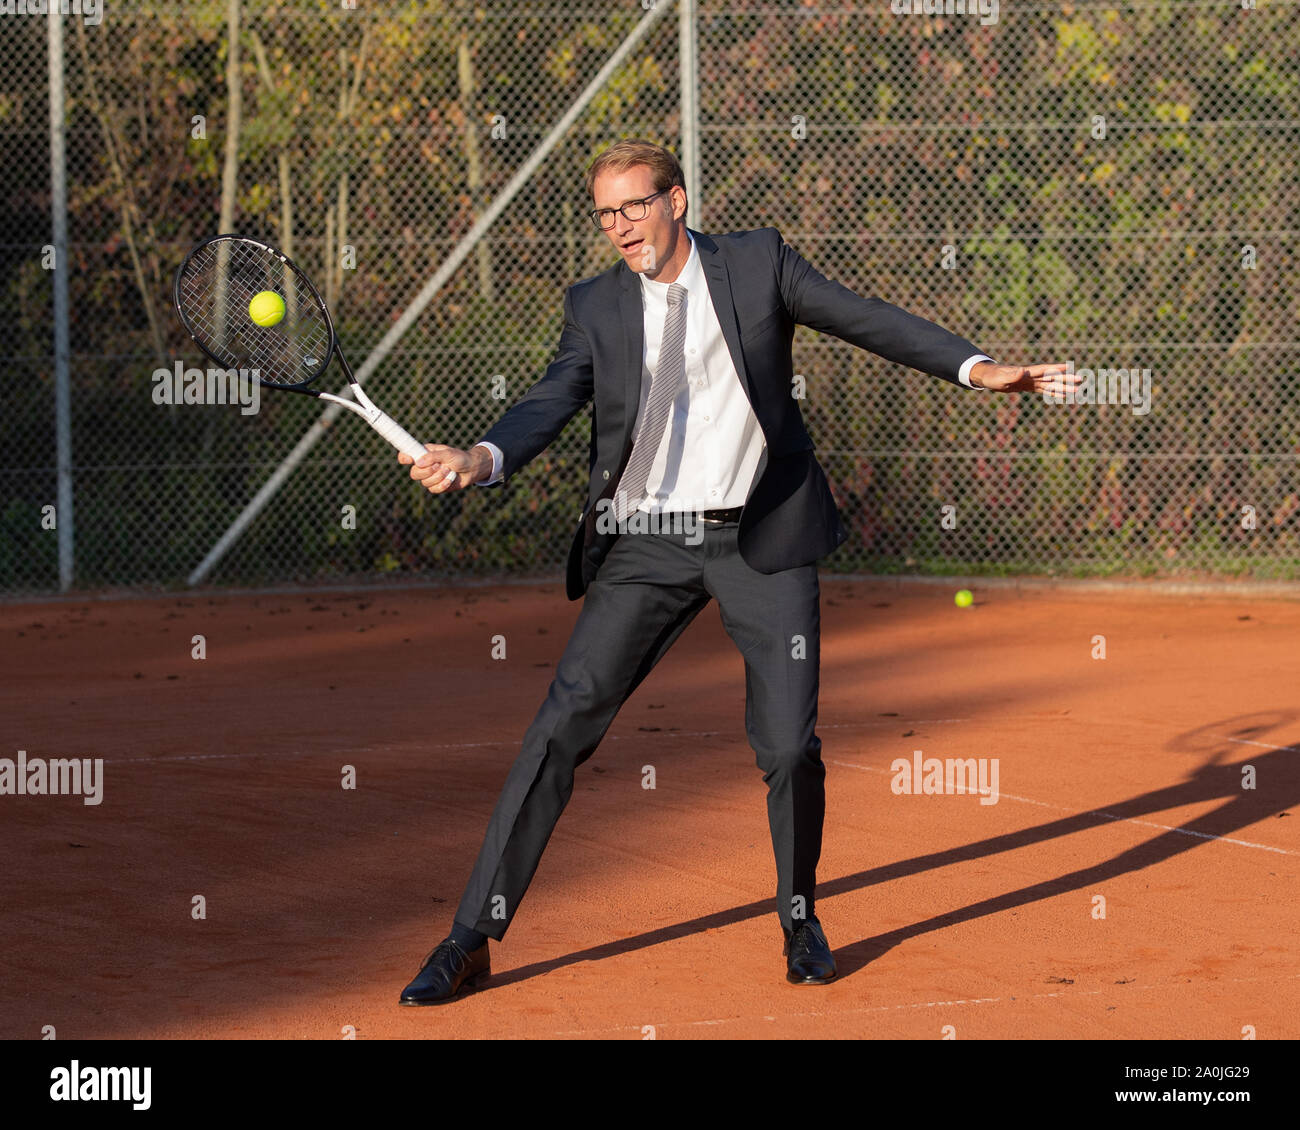 Lächelnd Geschäftsmann in dunklen Anzug Tennis spielen Stockfoto